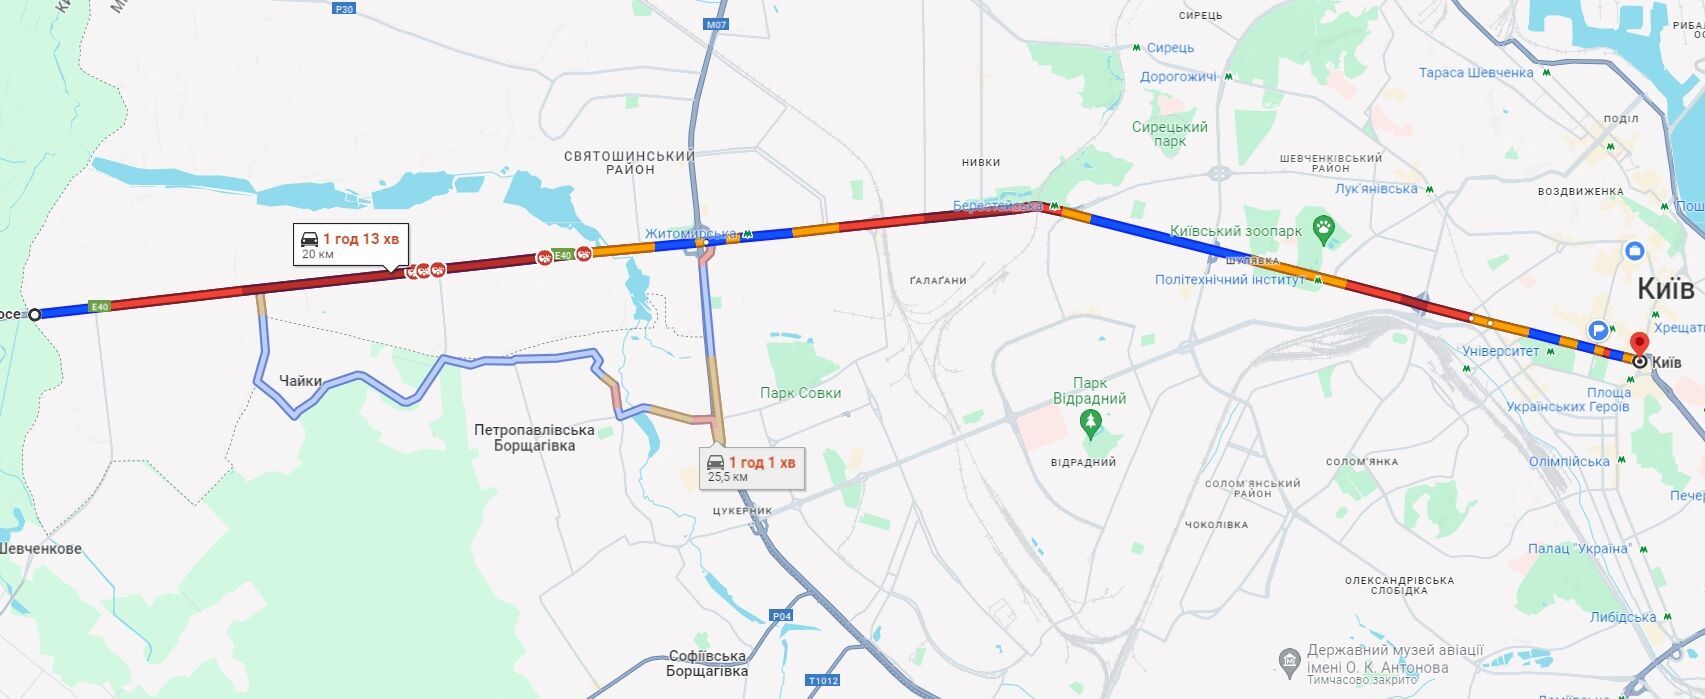 У Києві утворилися численні затори: де ускладнено рух авто. Карта